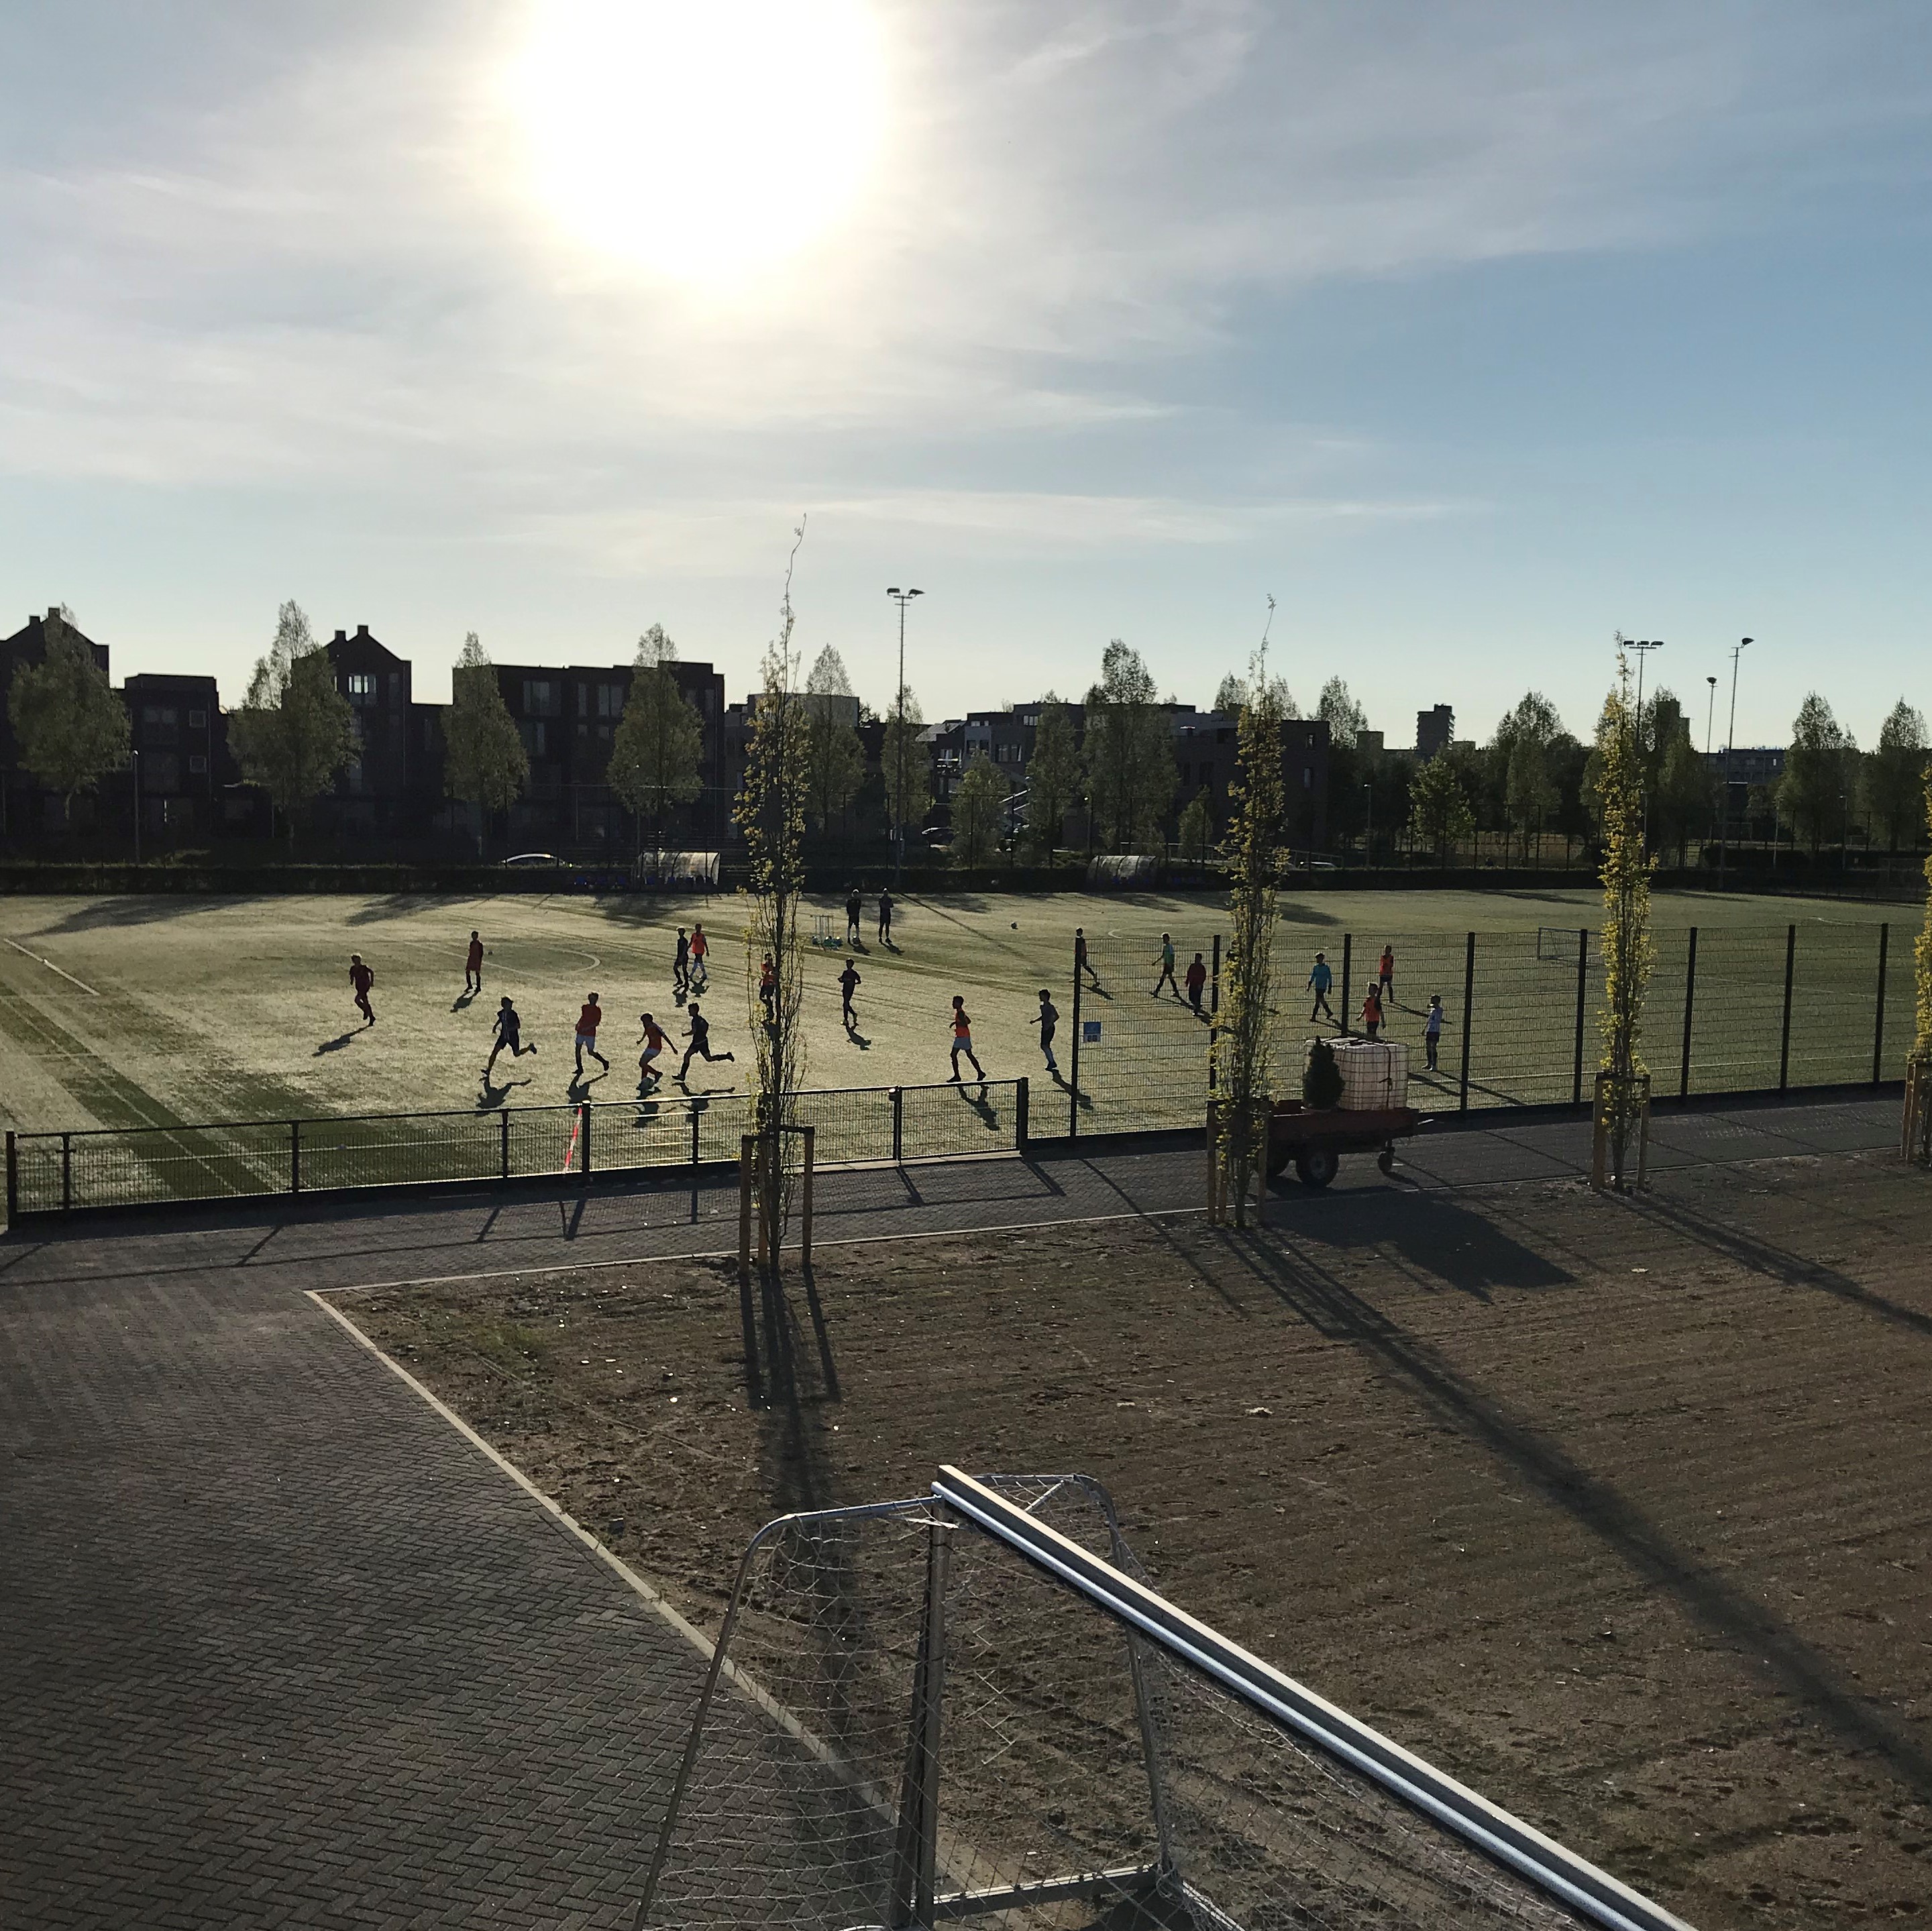 Na versoepeling van de maatregelen mogen kinderen tot 18 jaar weer sporten op de buitenvelden van voetbalvereniging Sporting '70. P. Notermans, 6 mei 2020. Coronacollectie HUA.